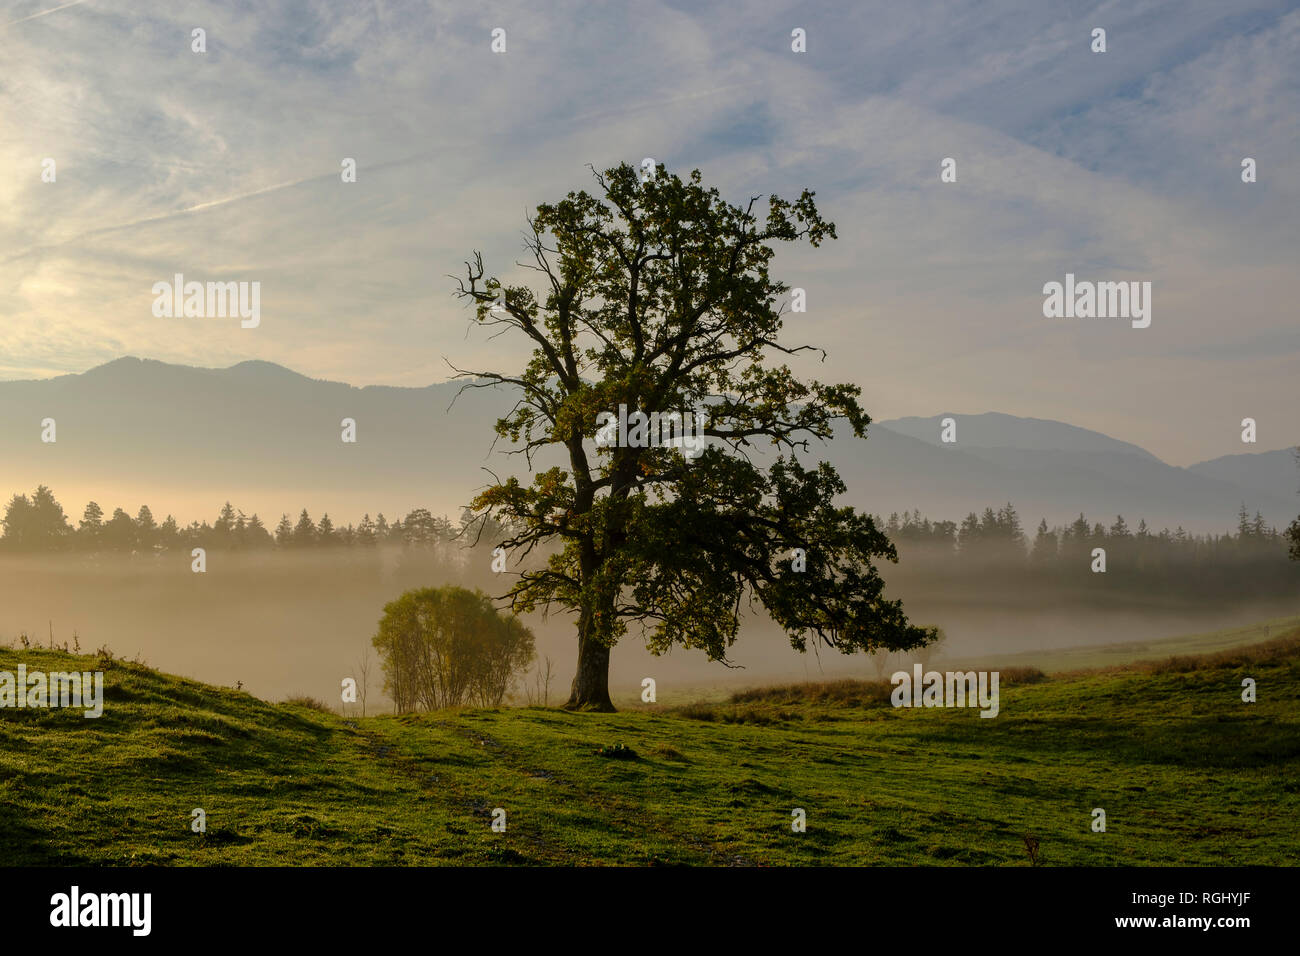 Germany, Nantesbuch, oak tree at morning mist Stock Photo